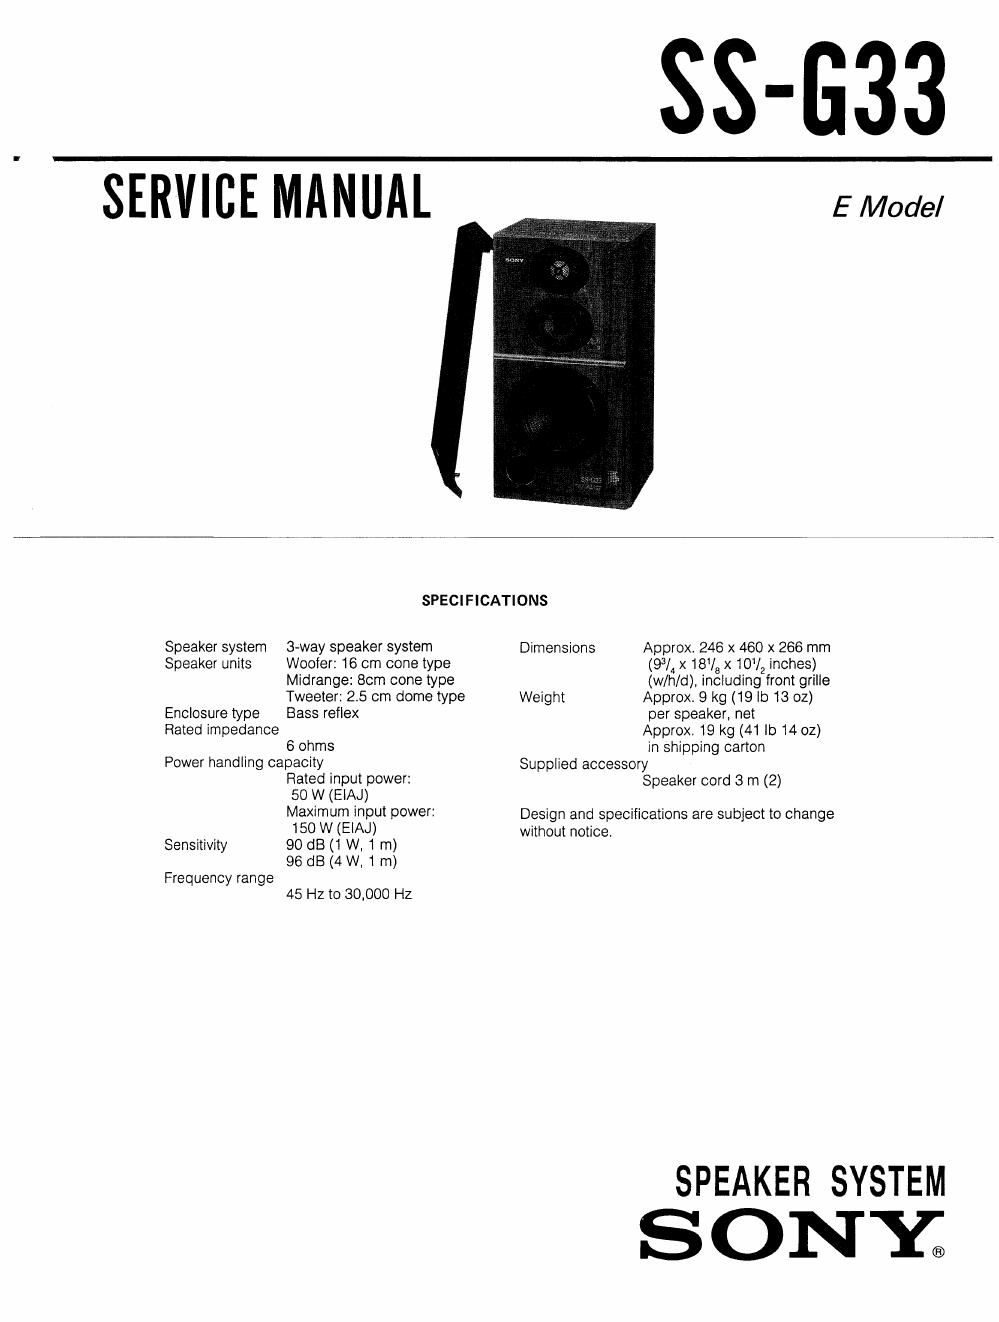 sony ss g 33 service manual